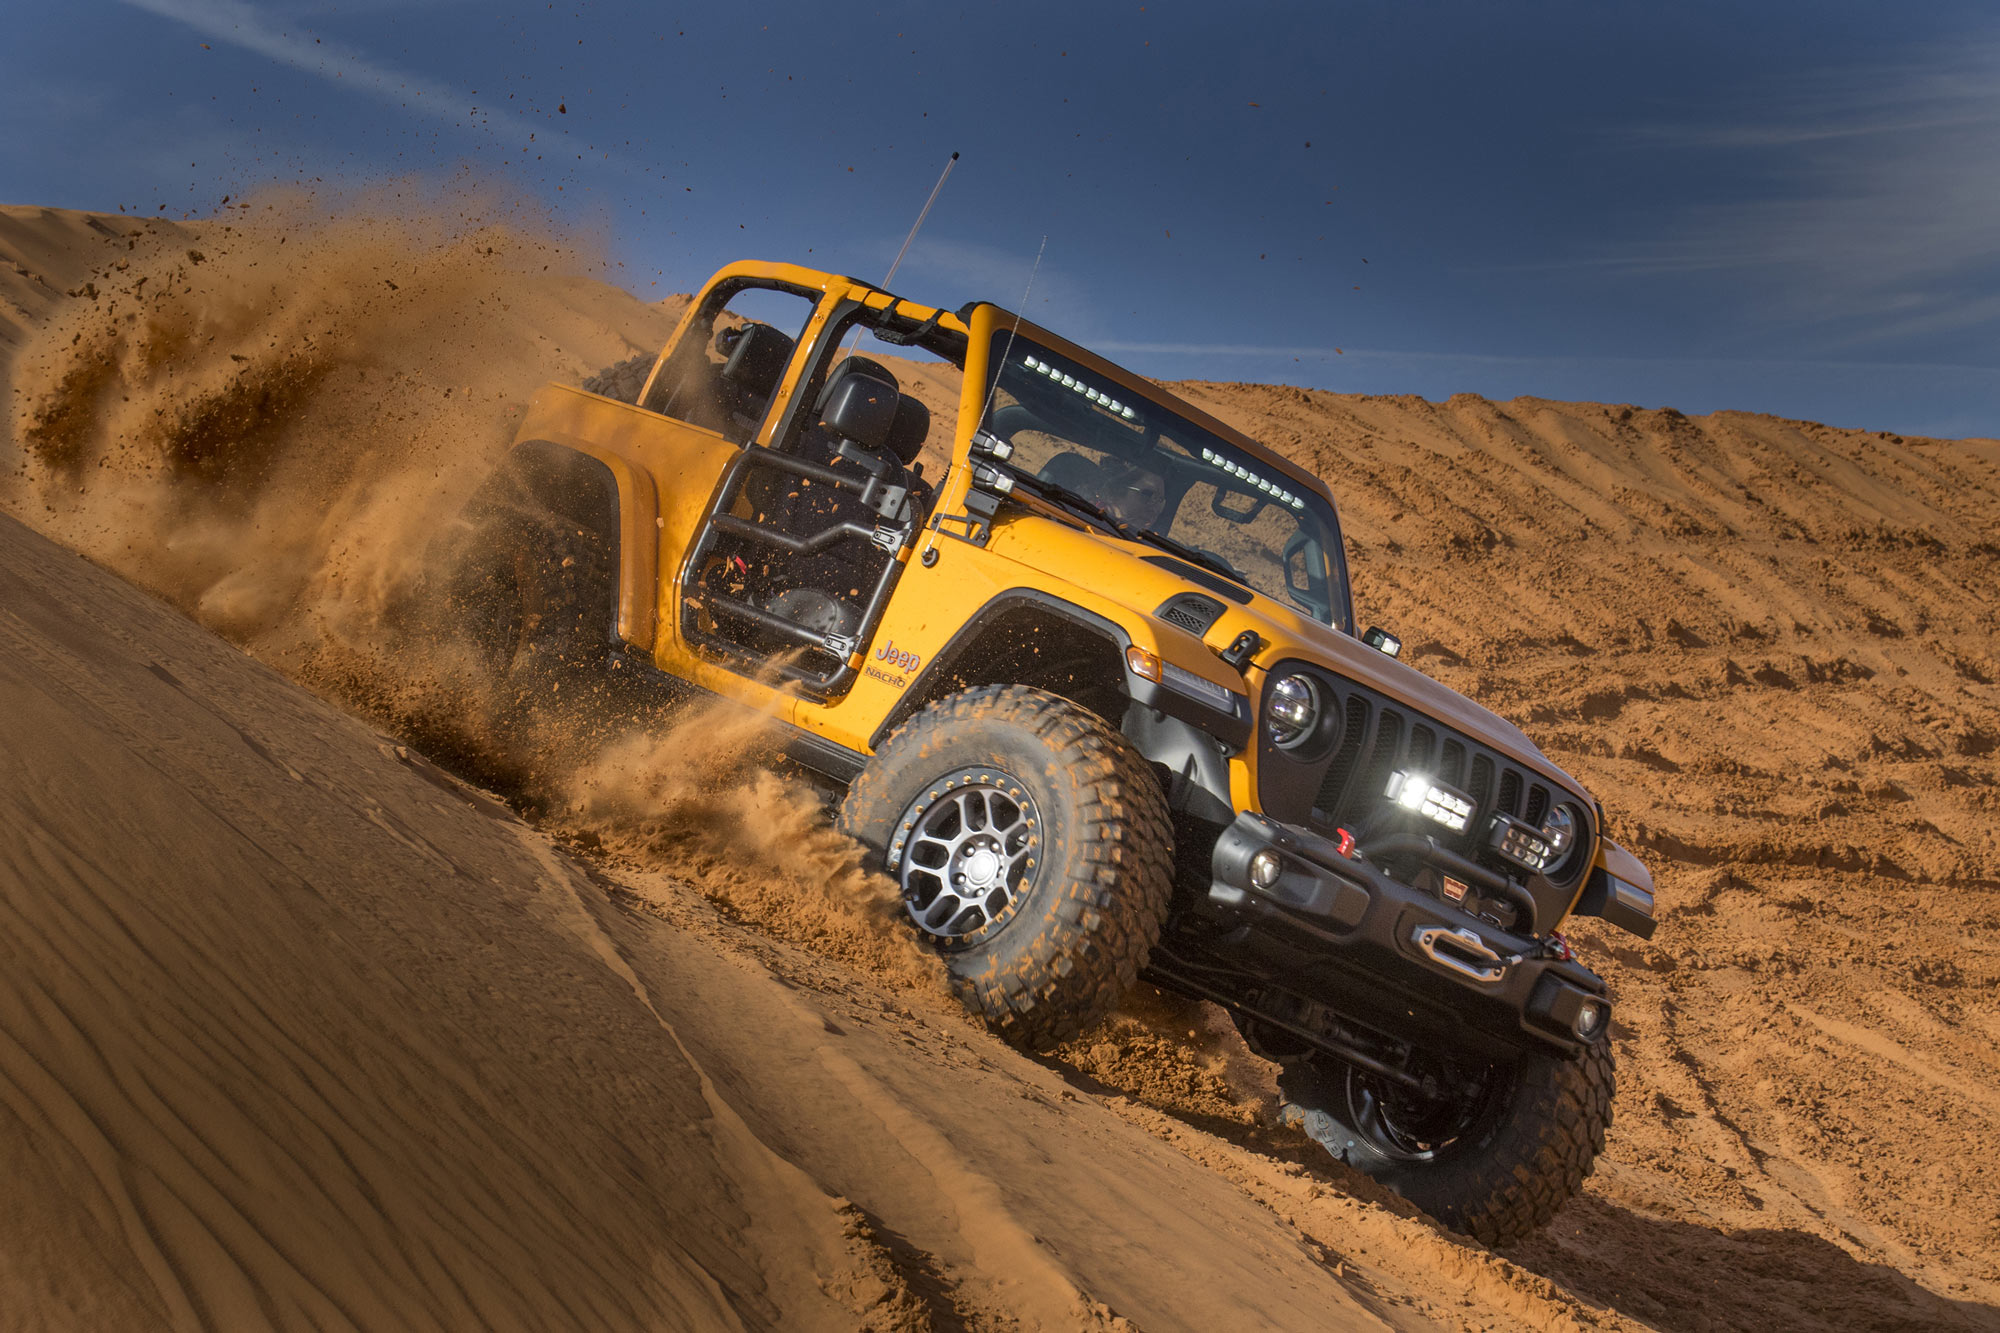 A yellow Jeep Wrangler kicks up sand